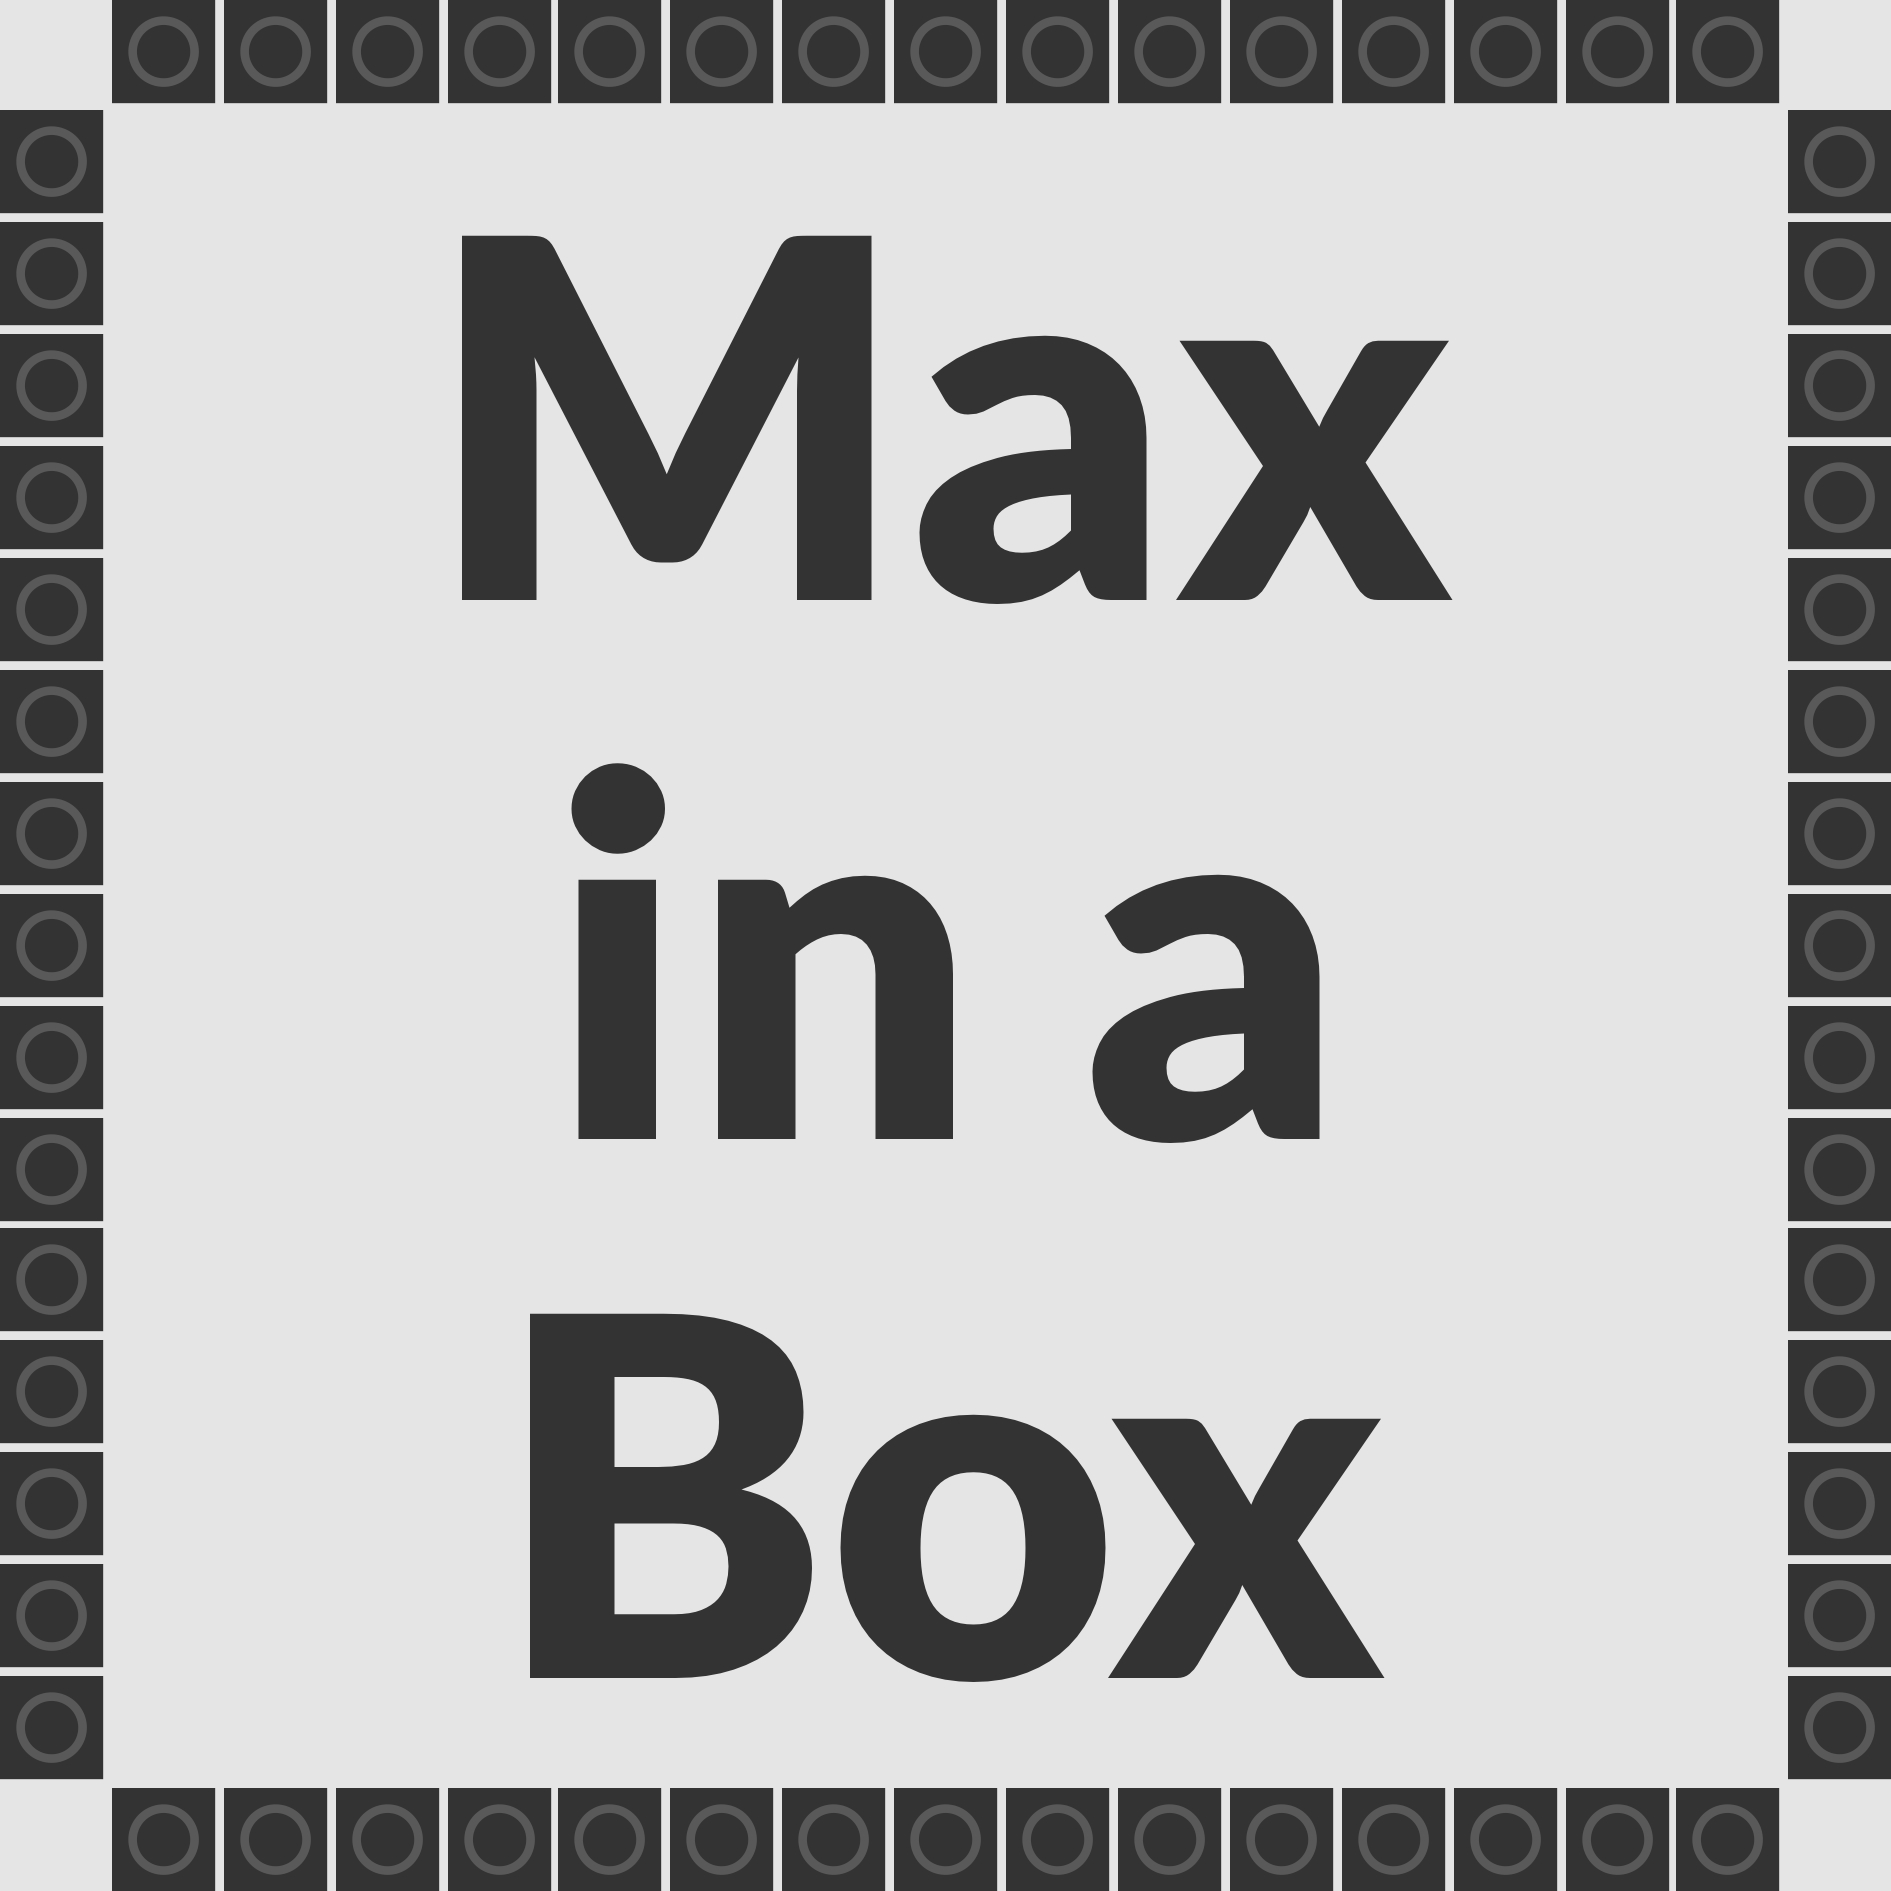 Anteprima del progetto Max in a Box.